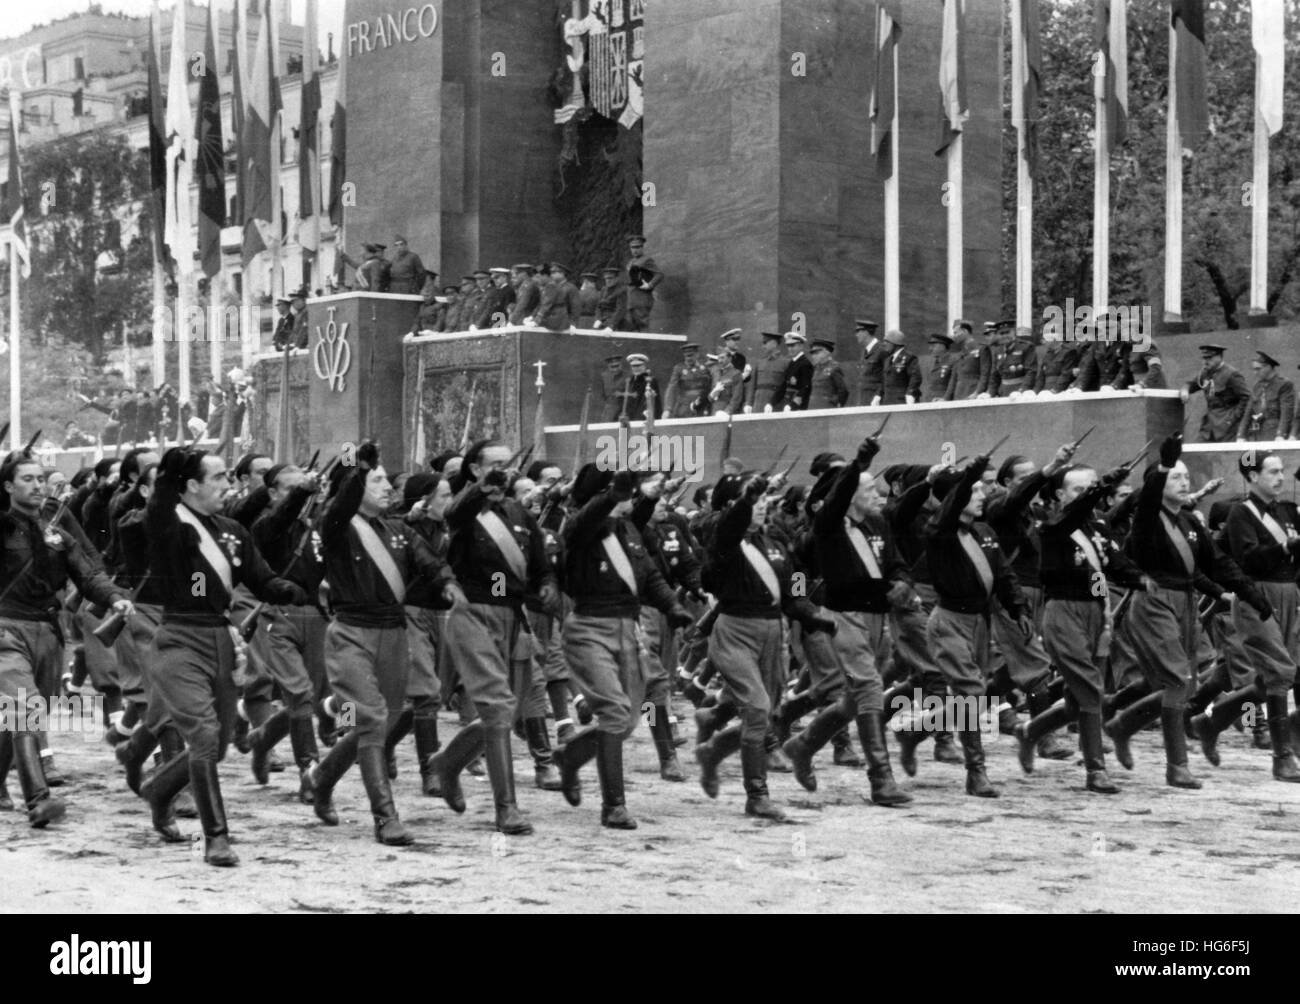 L'immagine della propaganda nazista mostra la marcia delle milizie fasciste italiane (comunemente chiamate 'camicie nere') in occasione della grande parata di vittoria dopo la presa del potere di Franco a Madrid, Spagna, maggio 1939. Fotoarchiv für Zeitgeschichtee- NO WIRE SERVICE - | usage worldwide Foto Stock